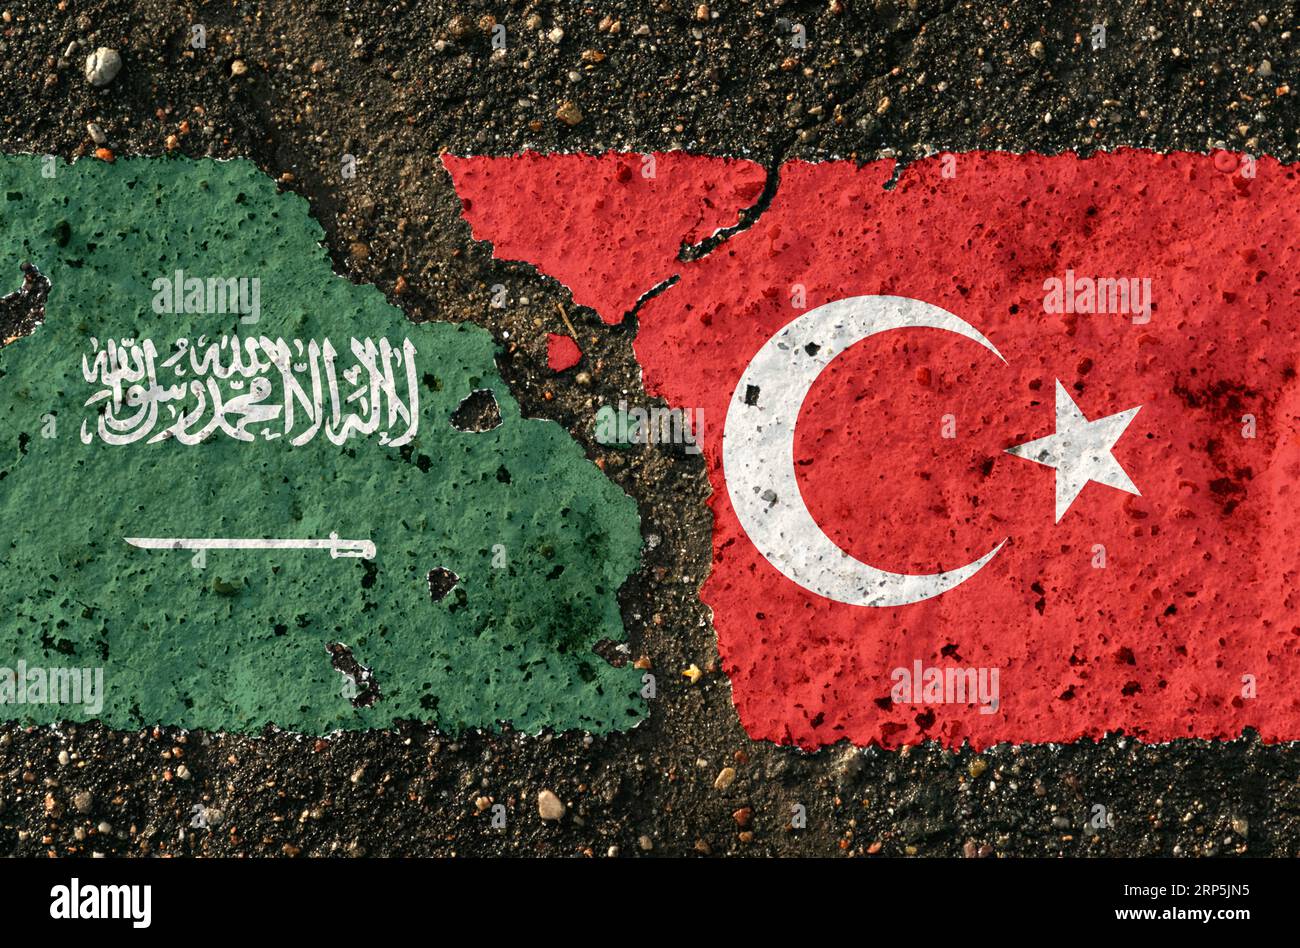 Sul marciapiede ci sono immagini delle bandiere dell'Arabia Saudita e della Turchia, come simbolo di confronto. Immagine concettuale. Foto Stock